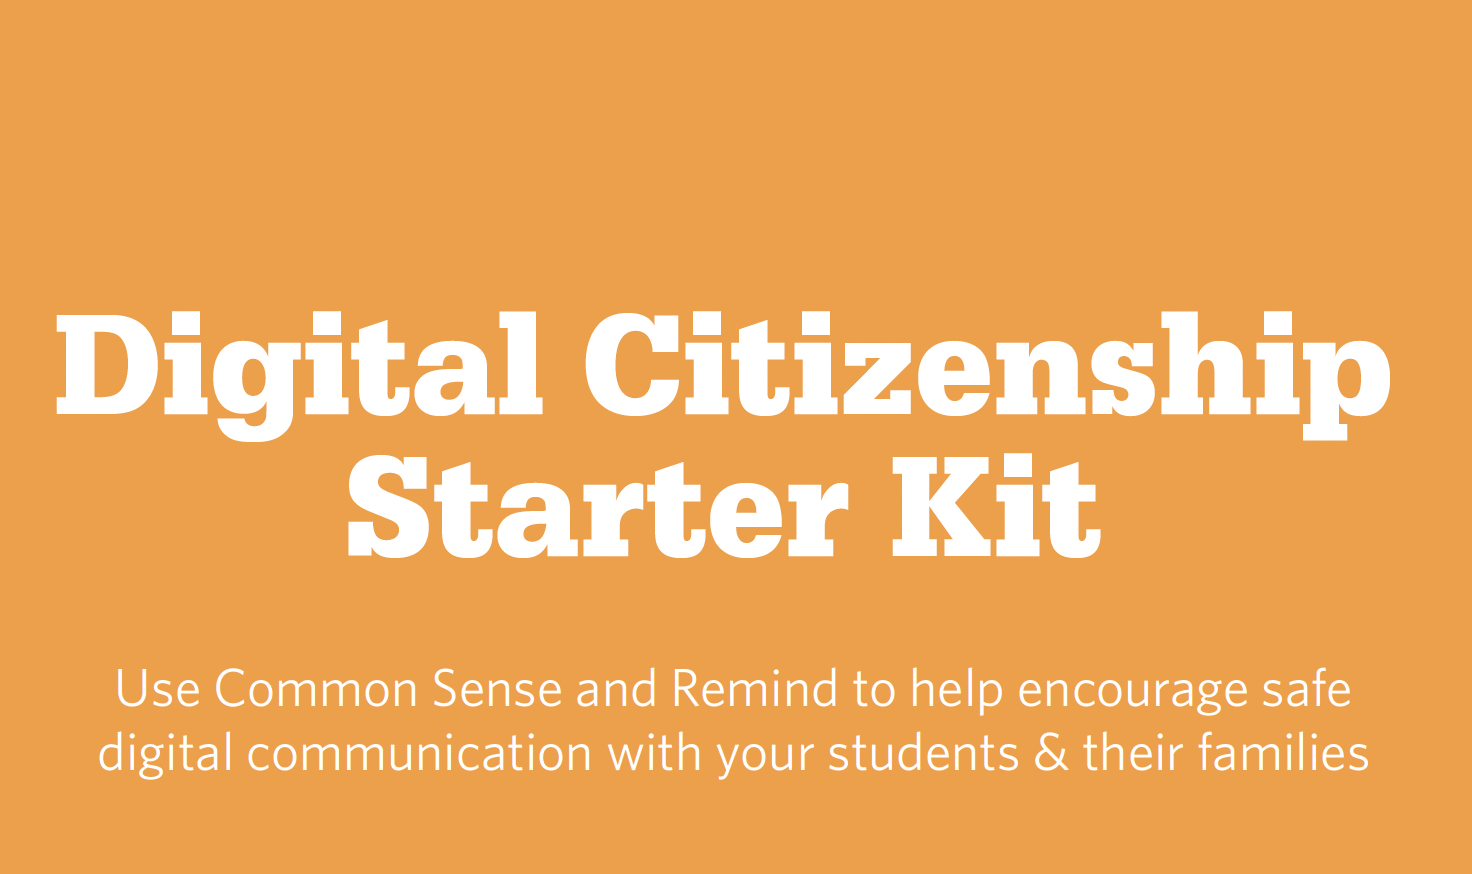 Digital Citizenship Starter Kit for K-12